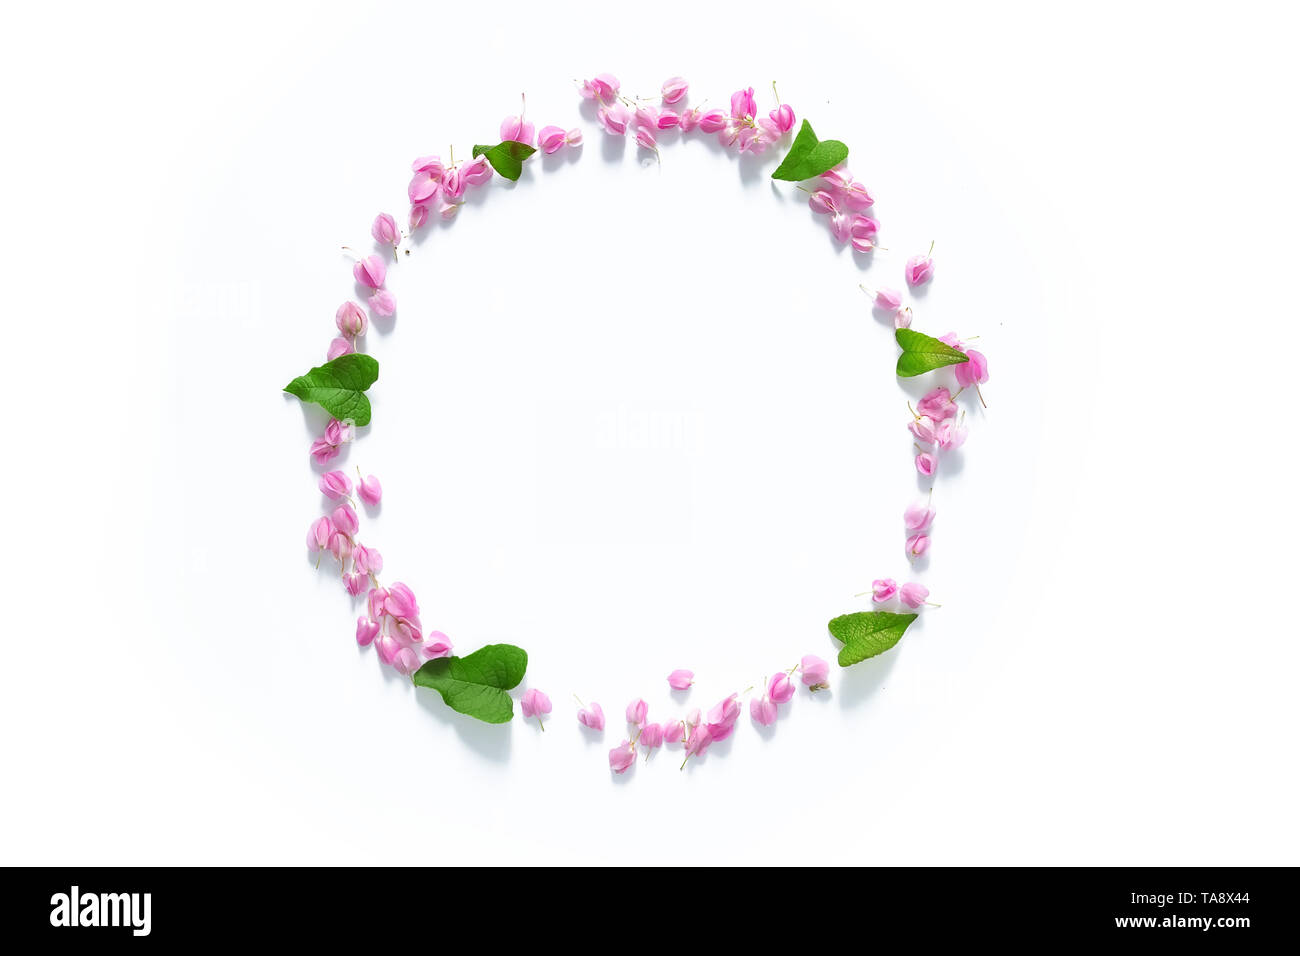 Flach Flower Crown, floral wreath Kreis von rosa Blumen auf weißem Hintergrund, Ansicht von oben. Blüte kreative Komposition mit Kopie sp Stockfoto